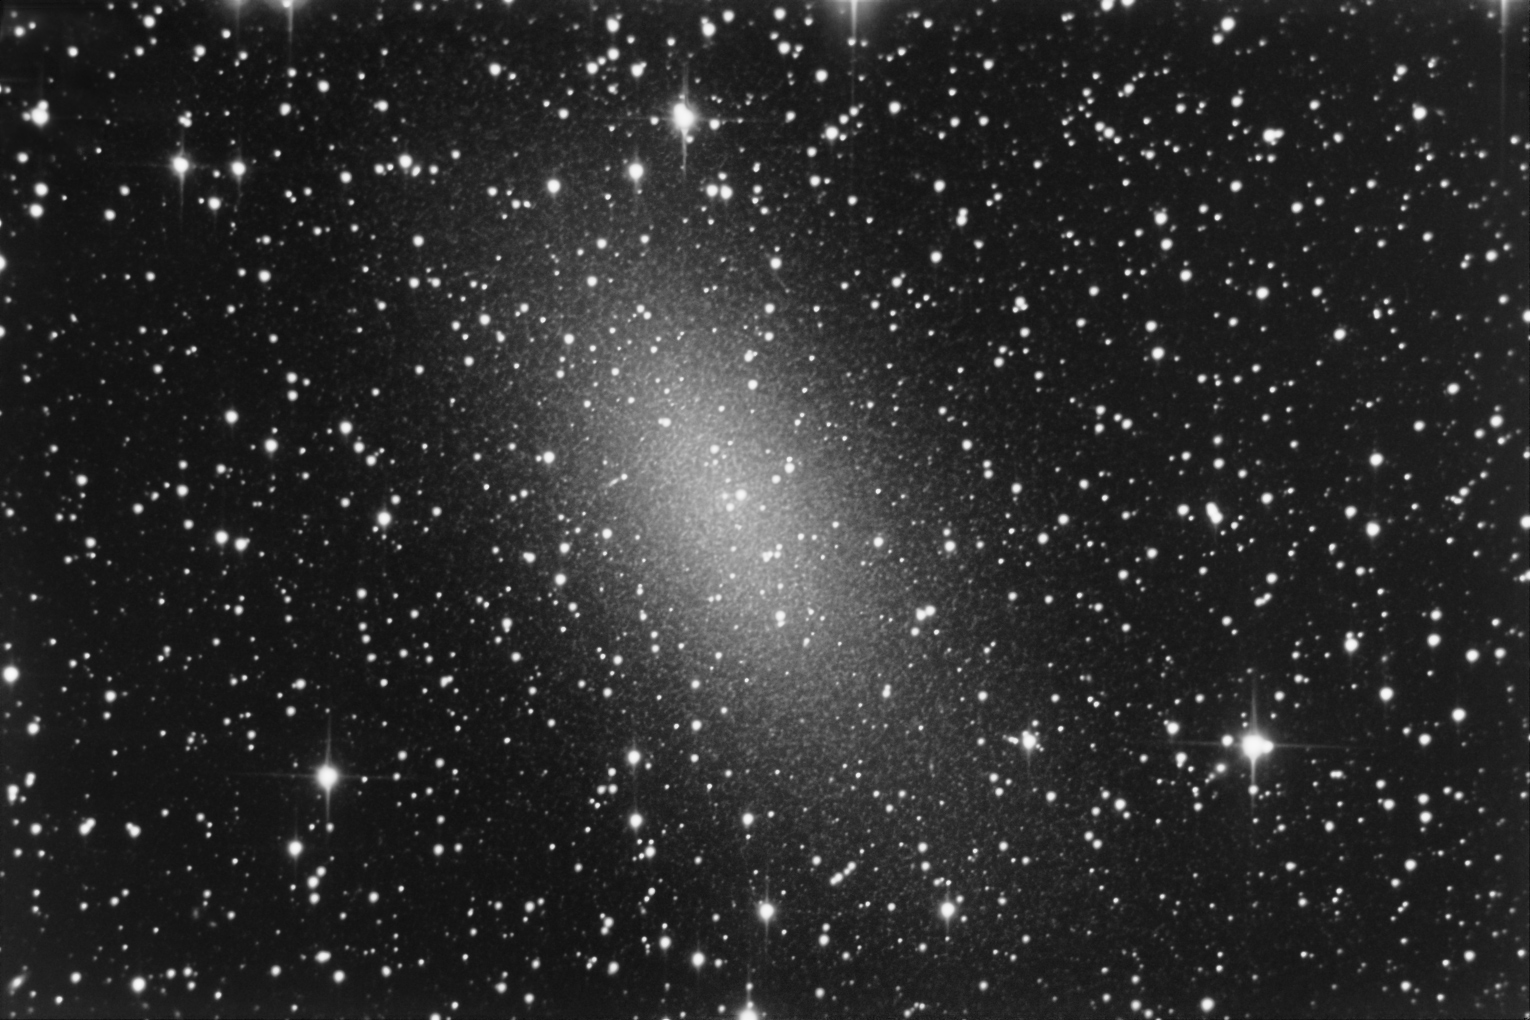 NGC147v2.jpg